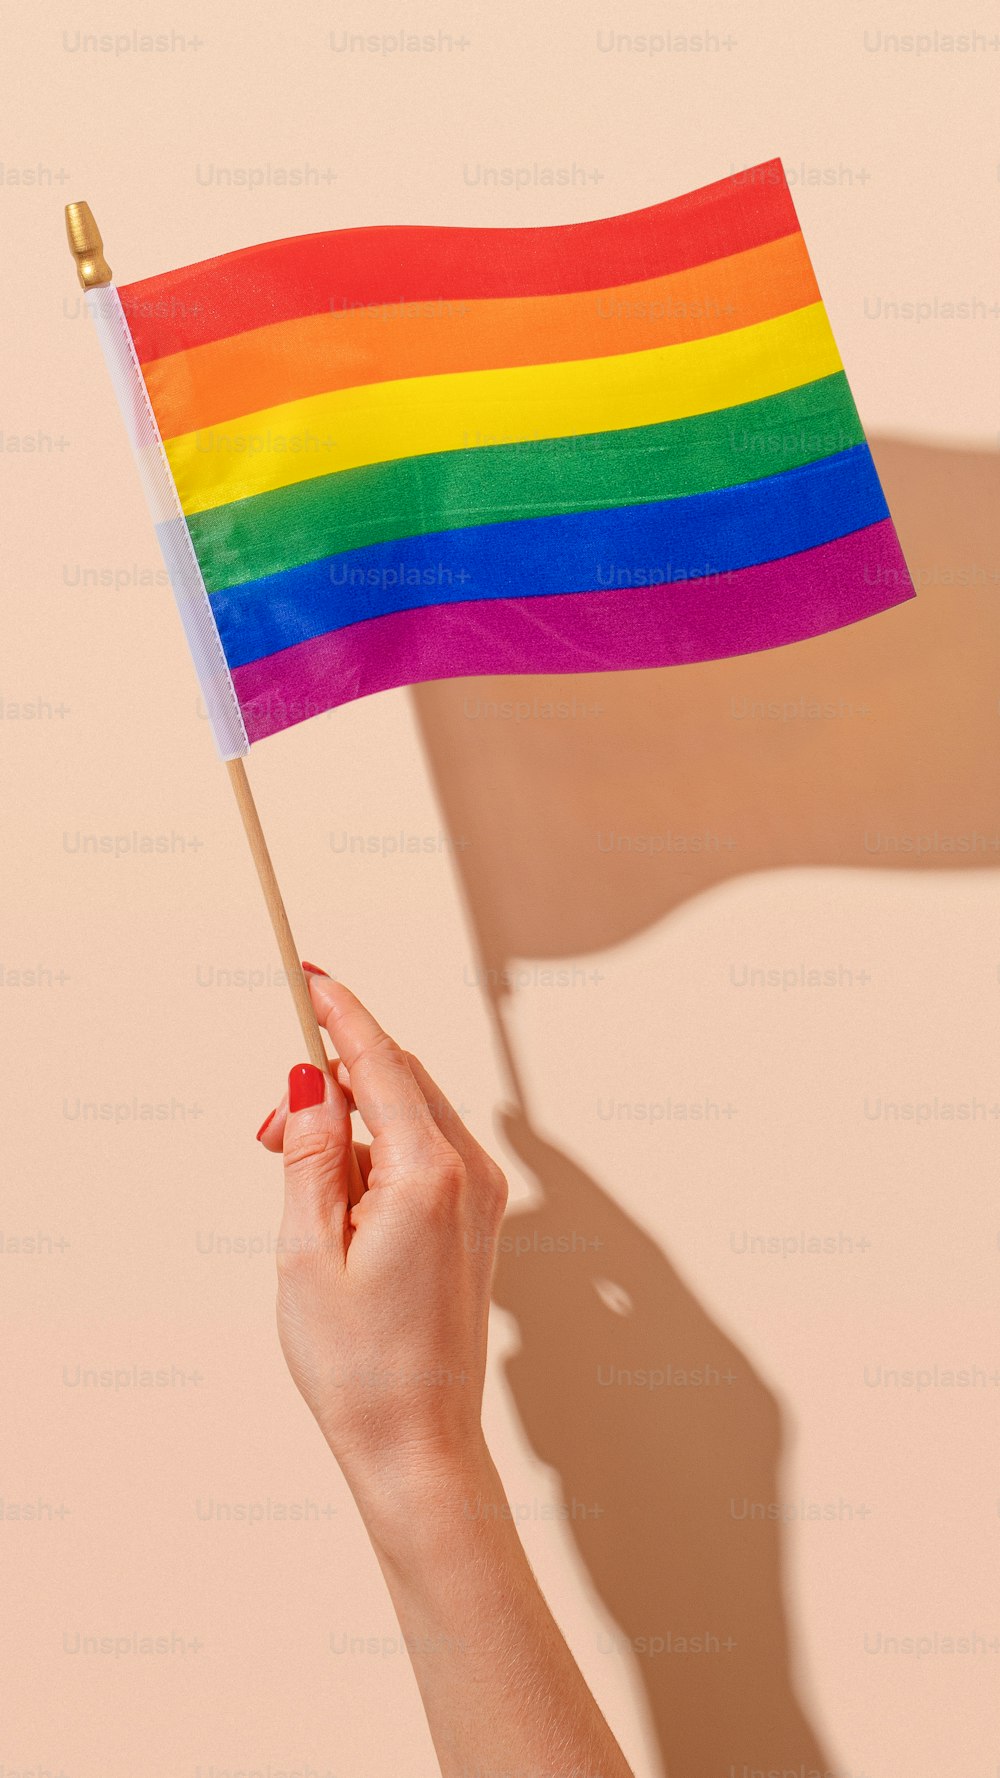 Una persona sosteniendo una bandera del arco iris en la mano